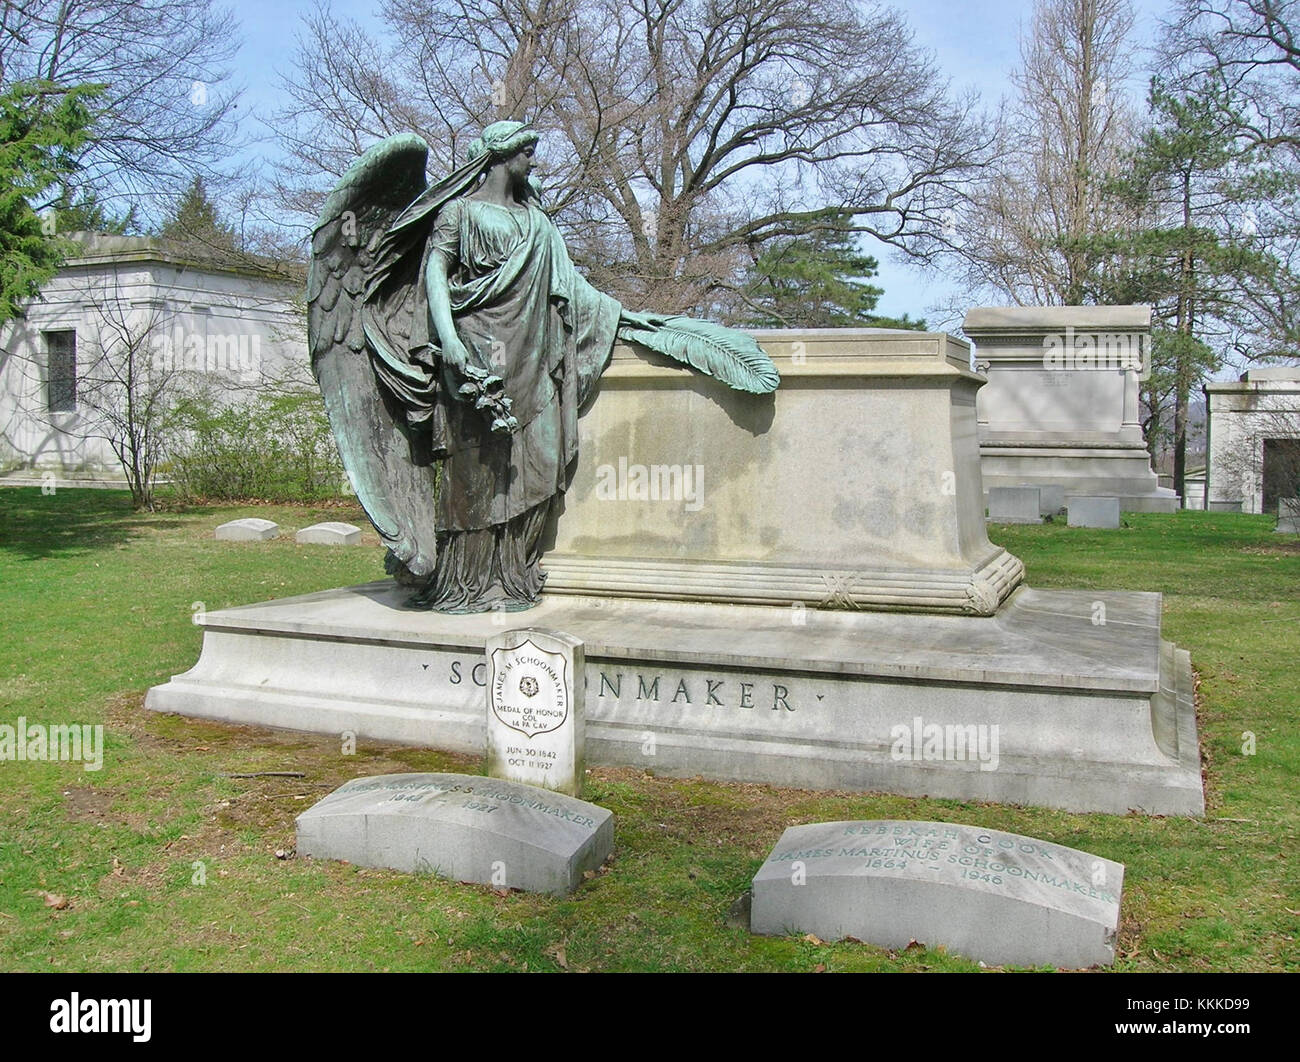 Schoonmaker Monument, cimetière Homewood, Pittsburgh, PA - mars 2016 Banque D'Images